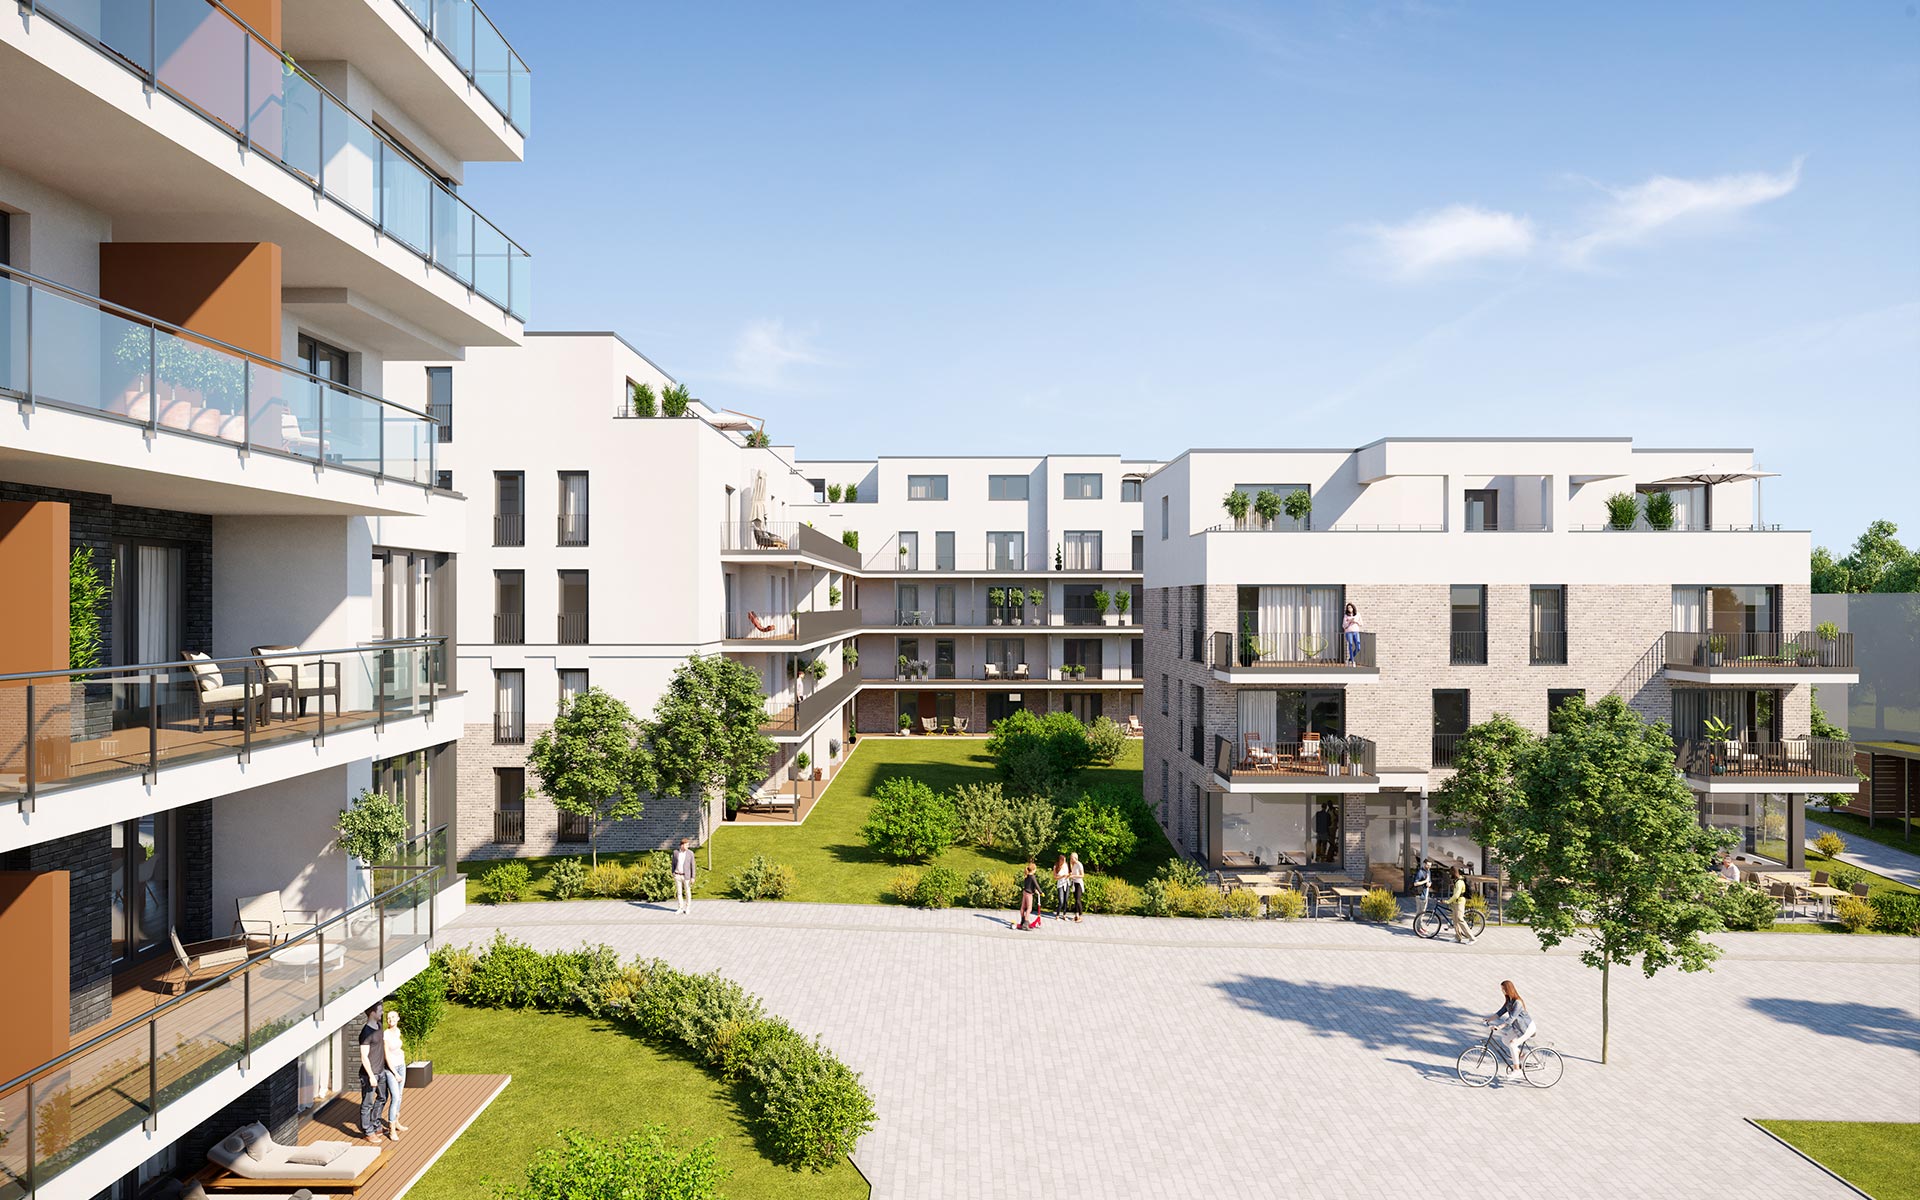 OPUS Marketing / Immobilienmarketing / hugo49 Bayreuth / Visualisierung / Aussenrendering Immobilie